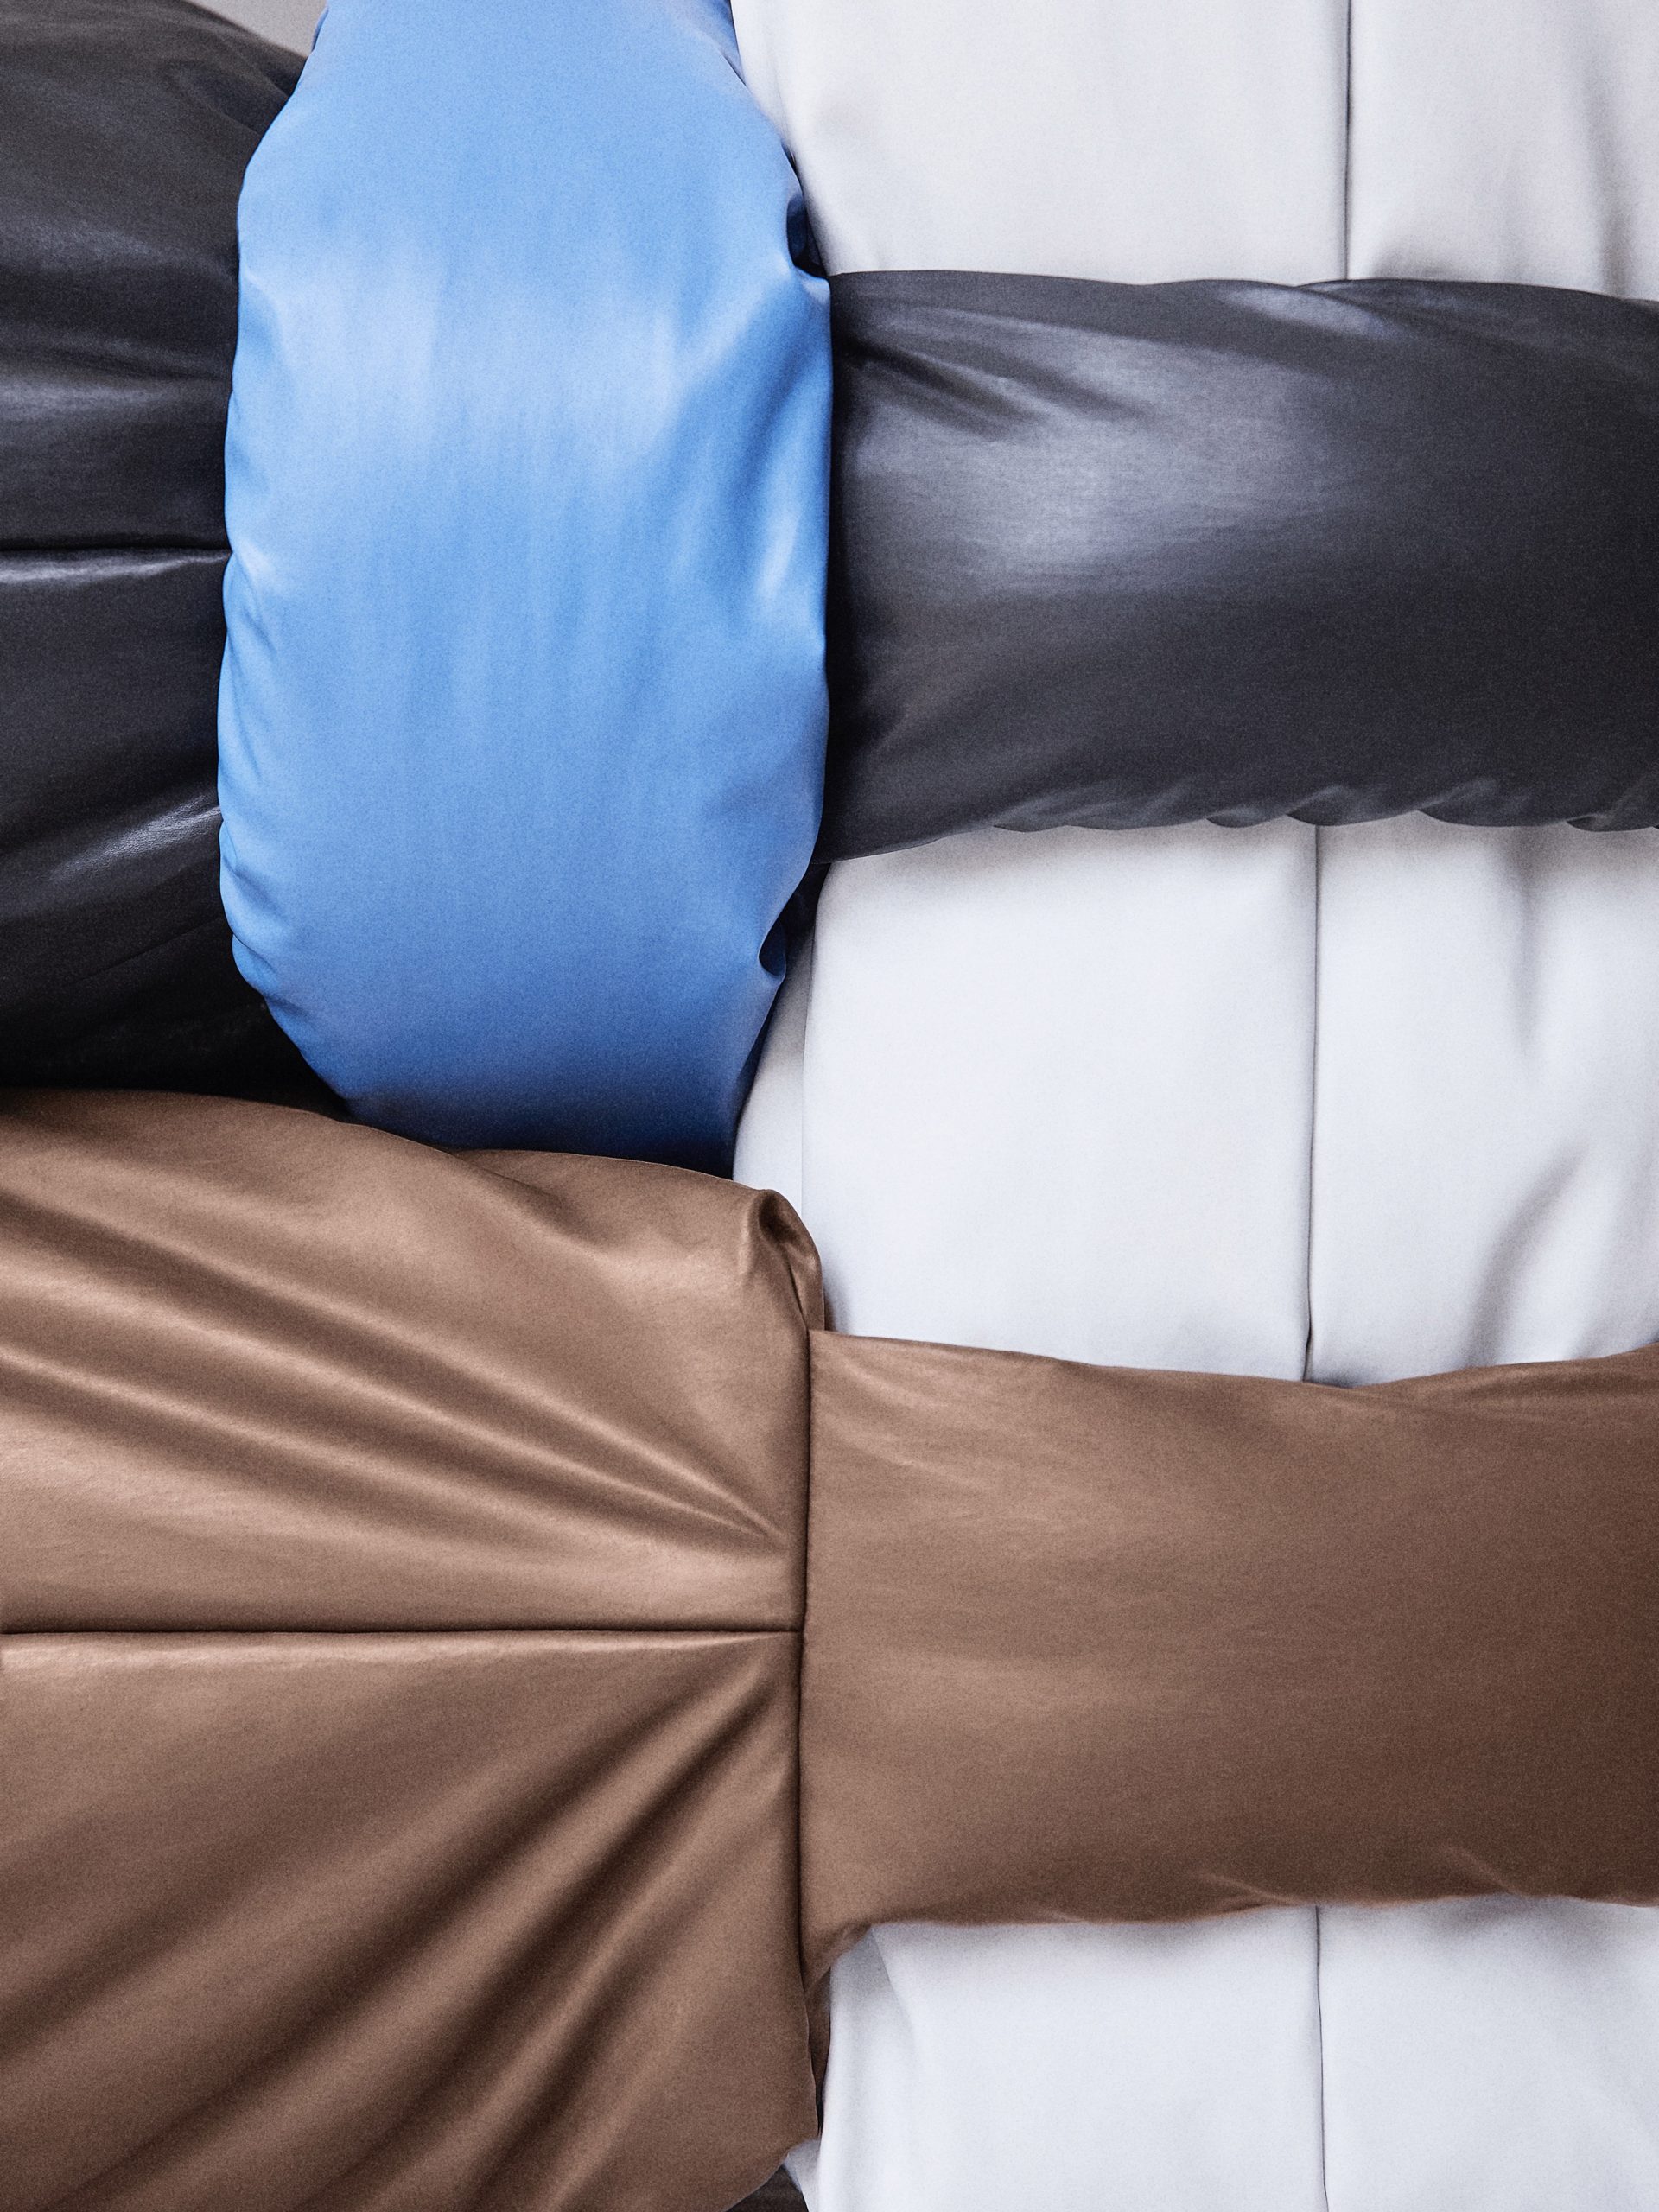 Muller Van Severen designs Pillow Sofa based on Kassl Edition's padded Pillow Bag